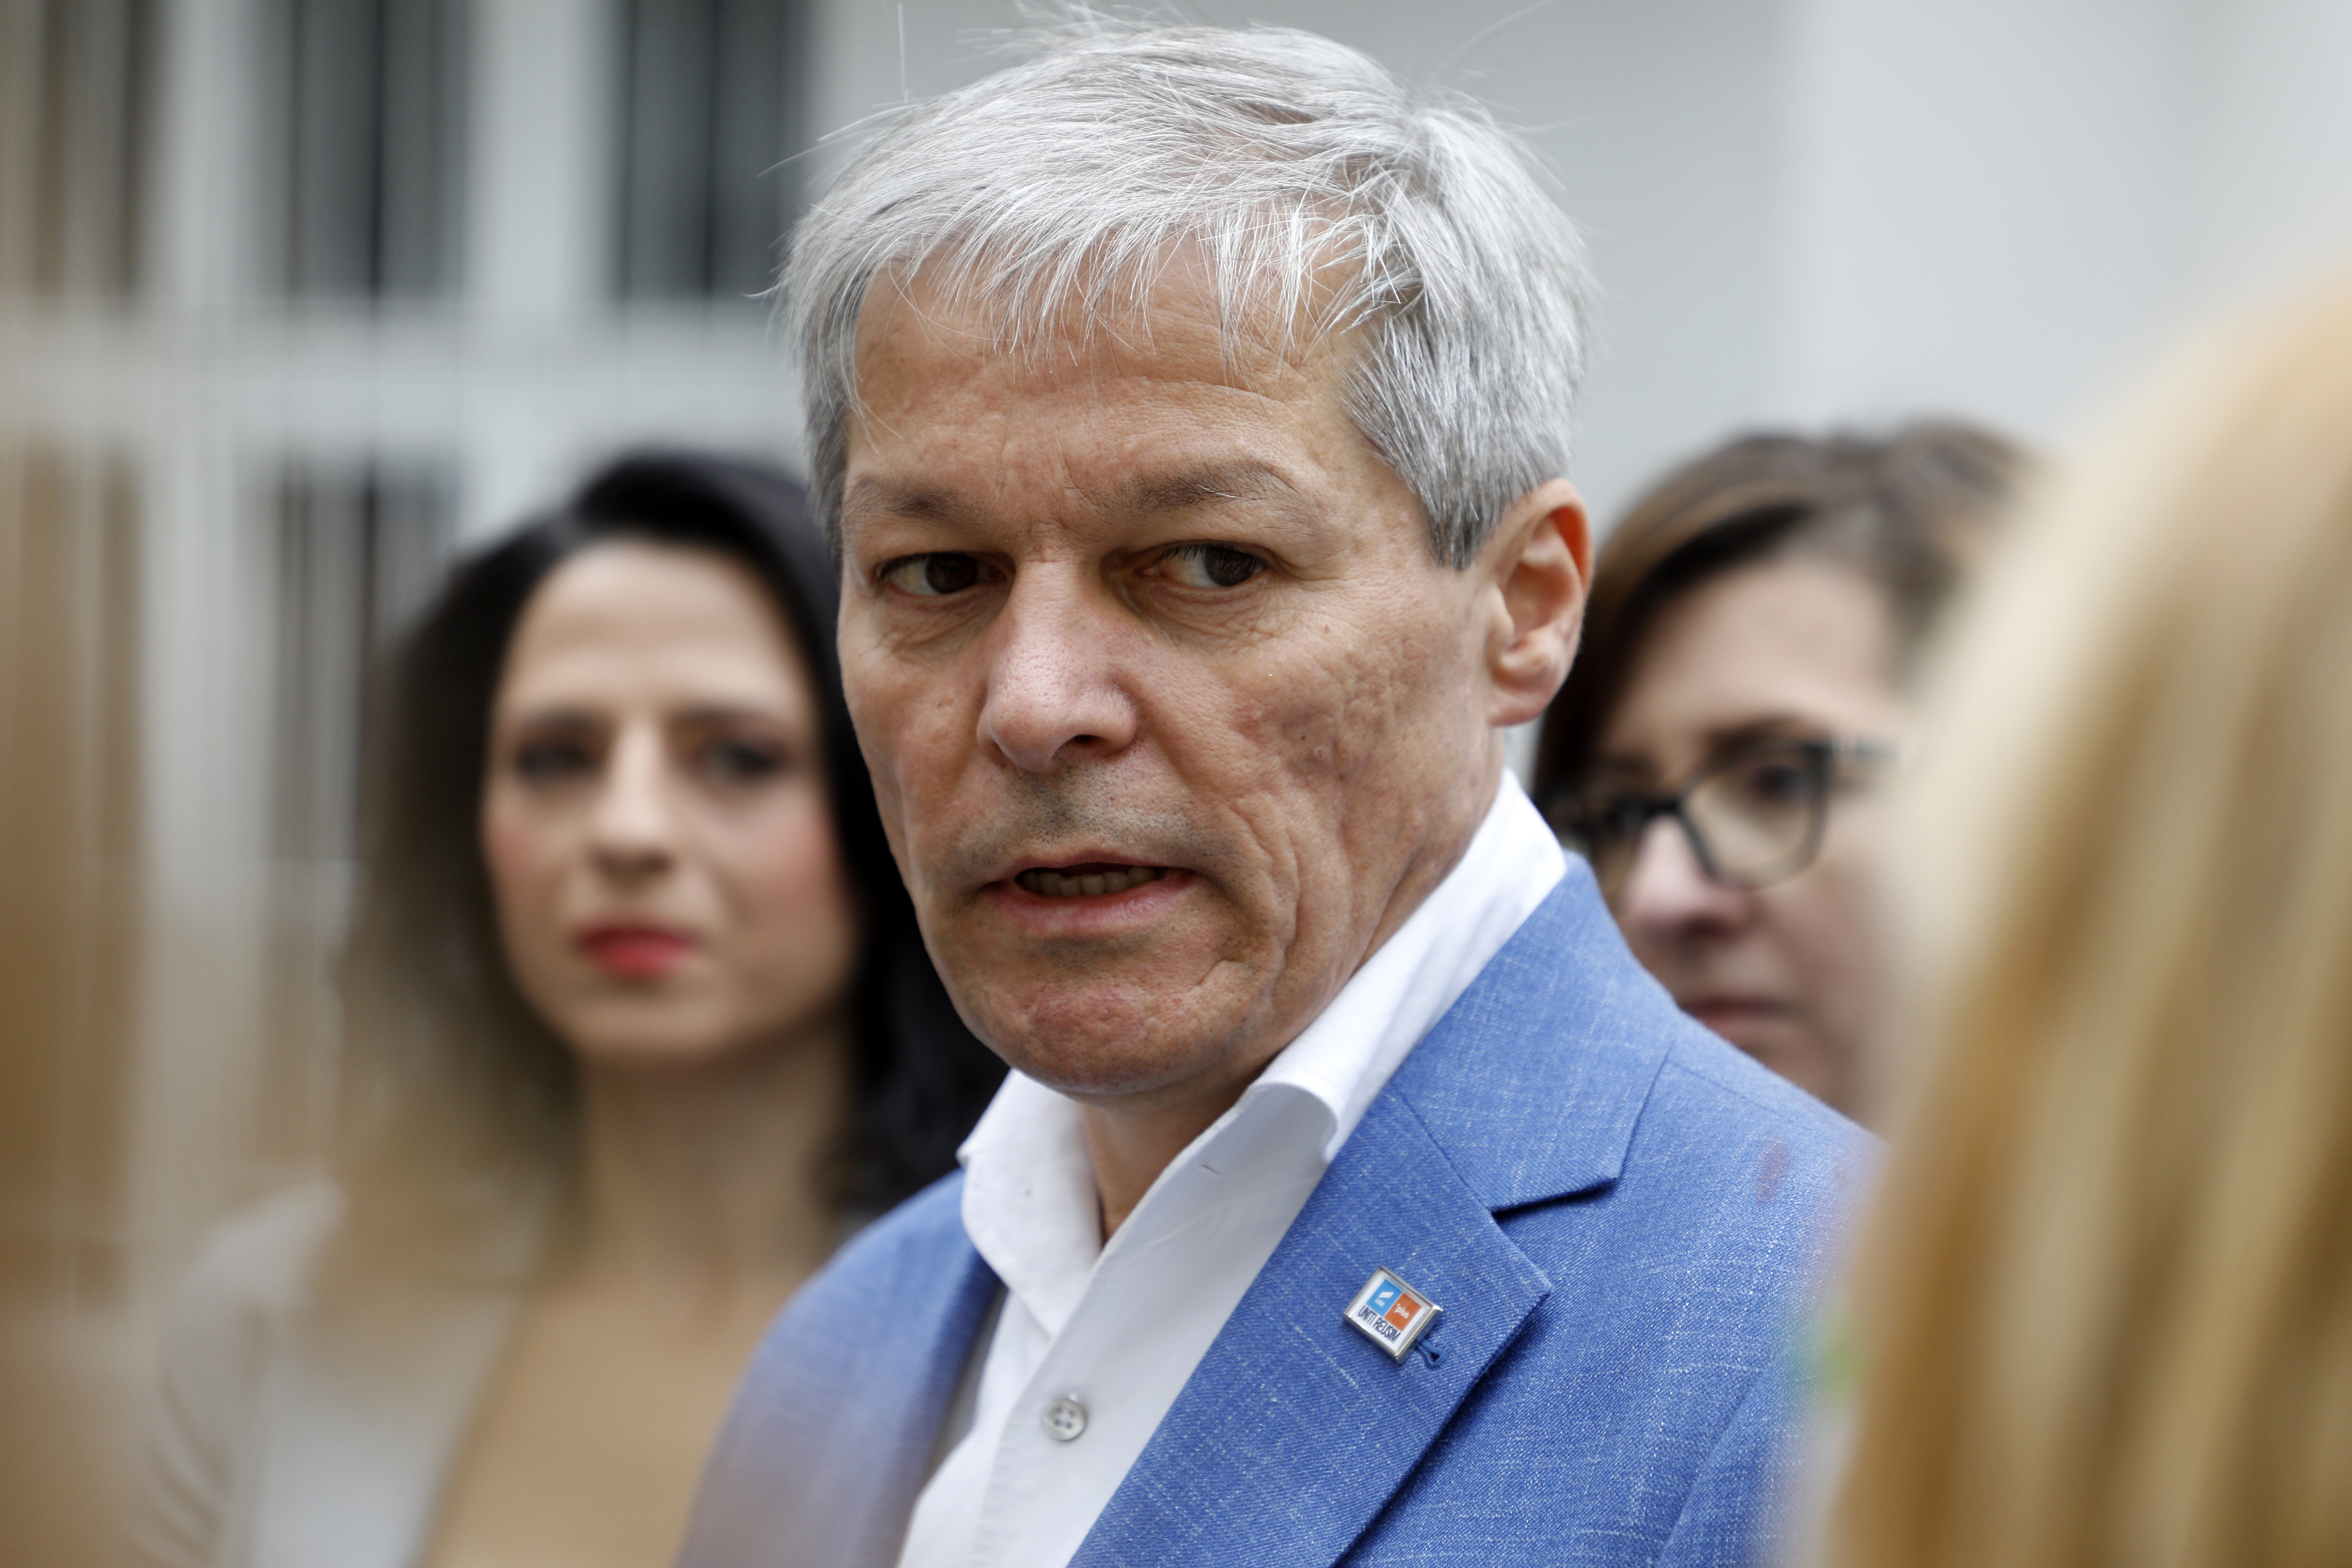 Cioloș: Noul preşedinte PNL să vină cu o propunere de prim-ministru, alta decât Florin Cîţu. Ar fi un început bun